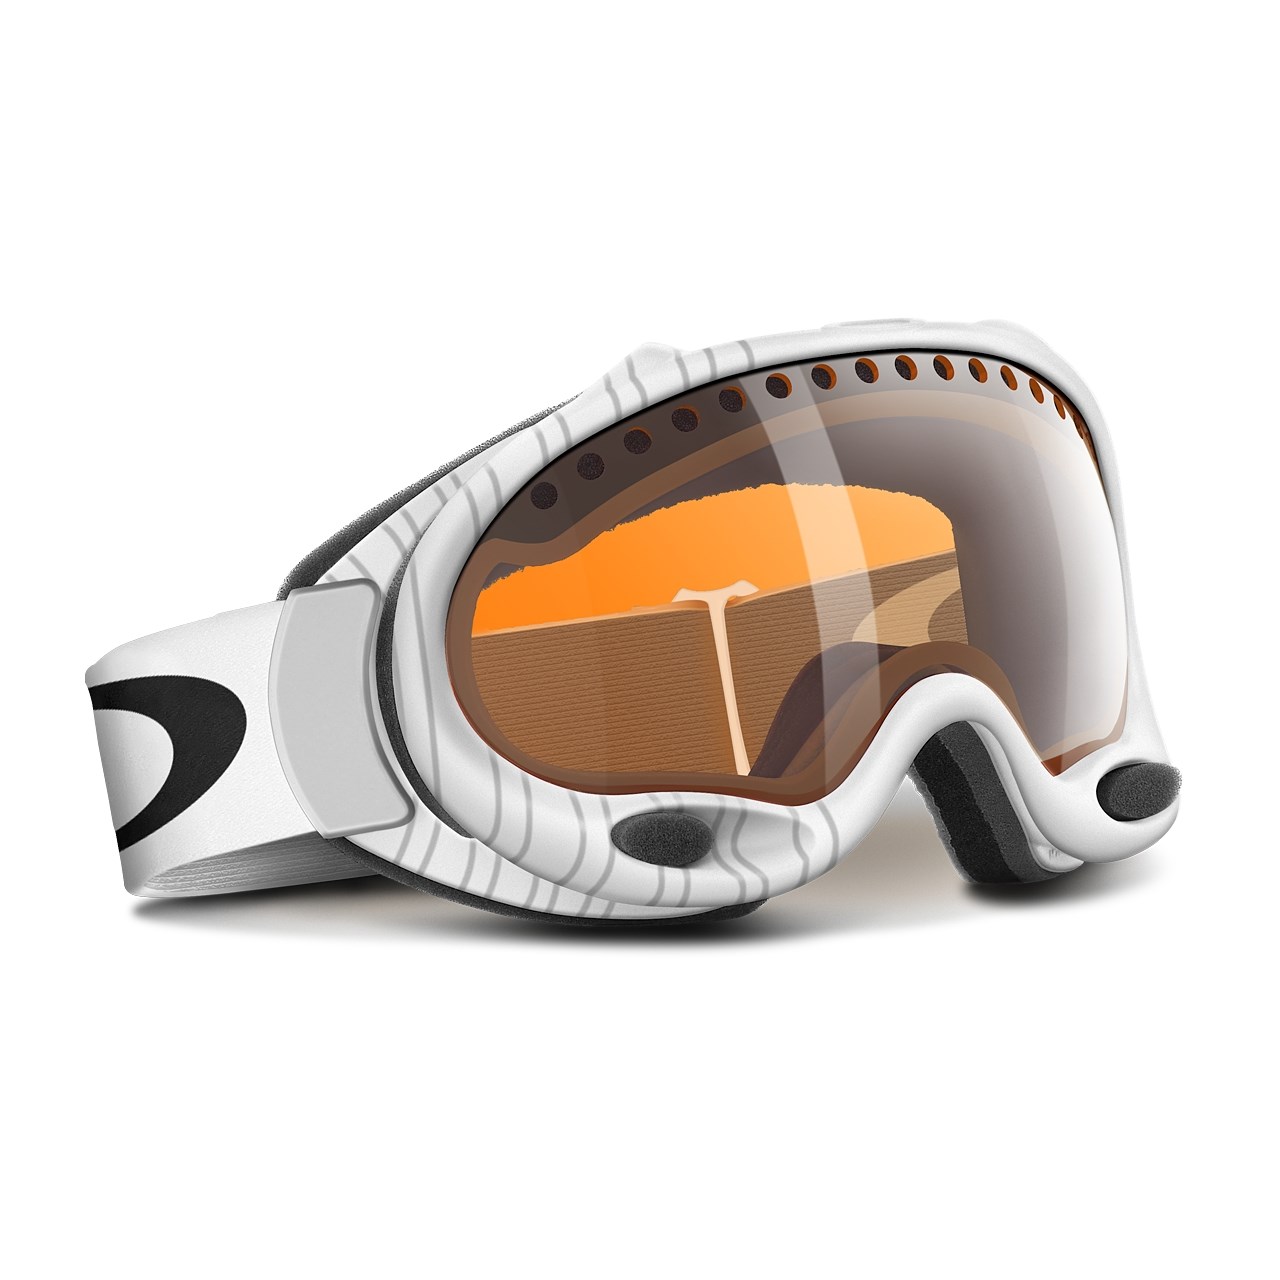 white oakley snowboard goggles